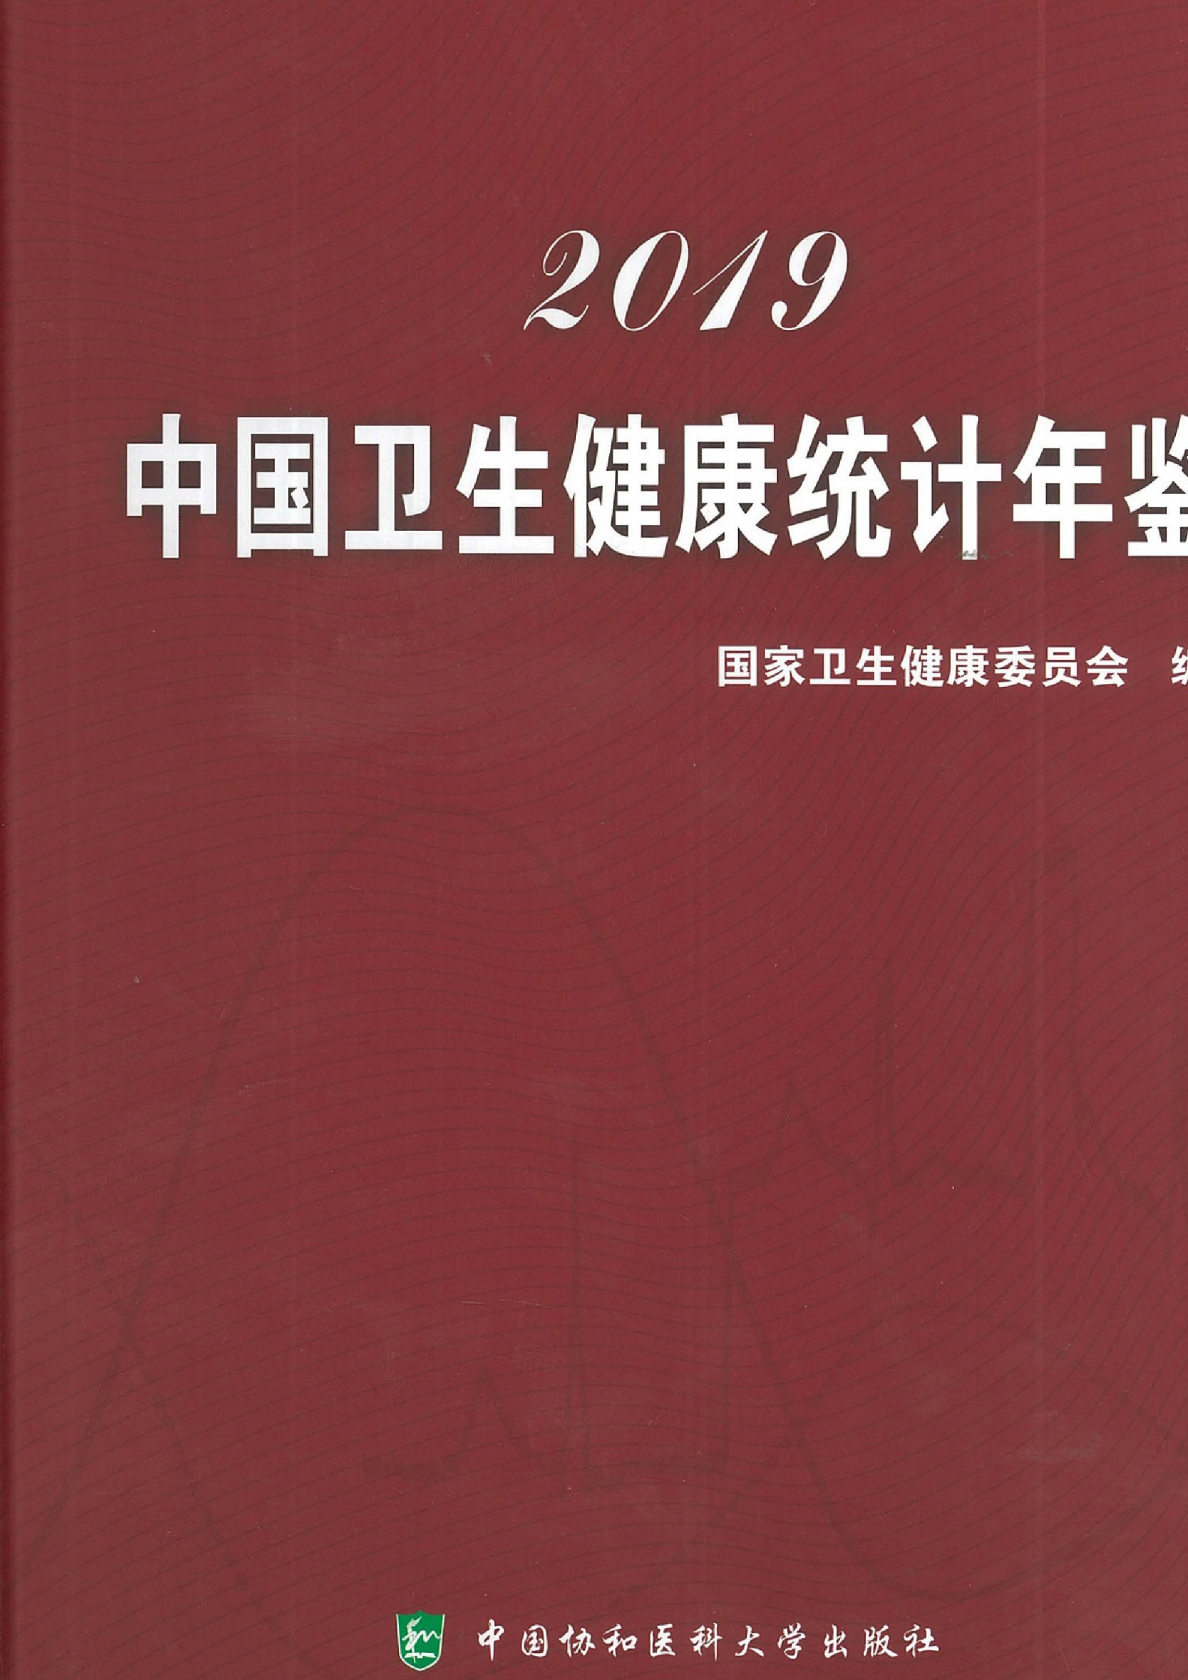 国家卫生健康委员会]：中国卫生健康统计年鉴2019 - 发现报告